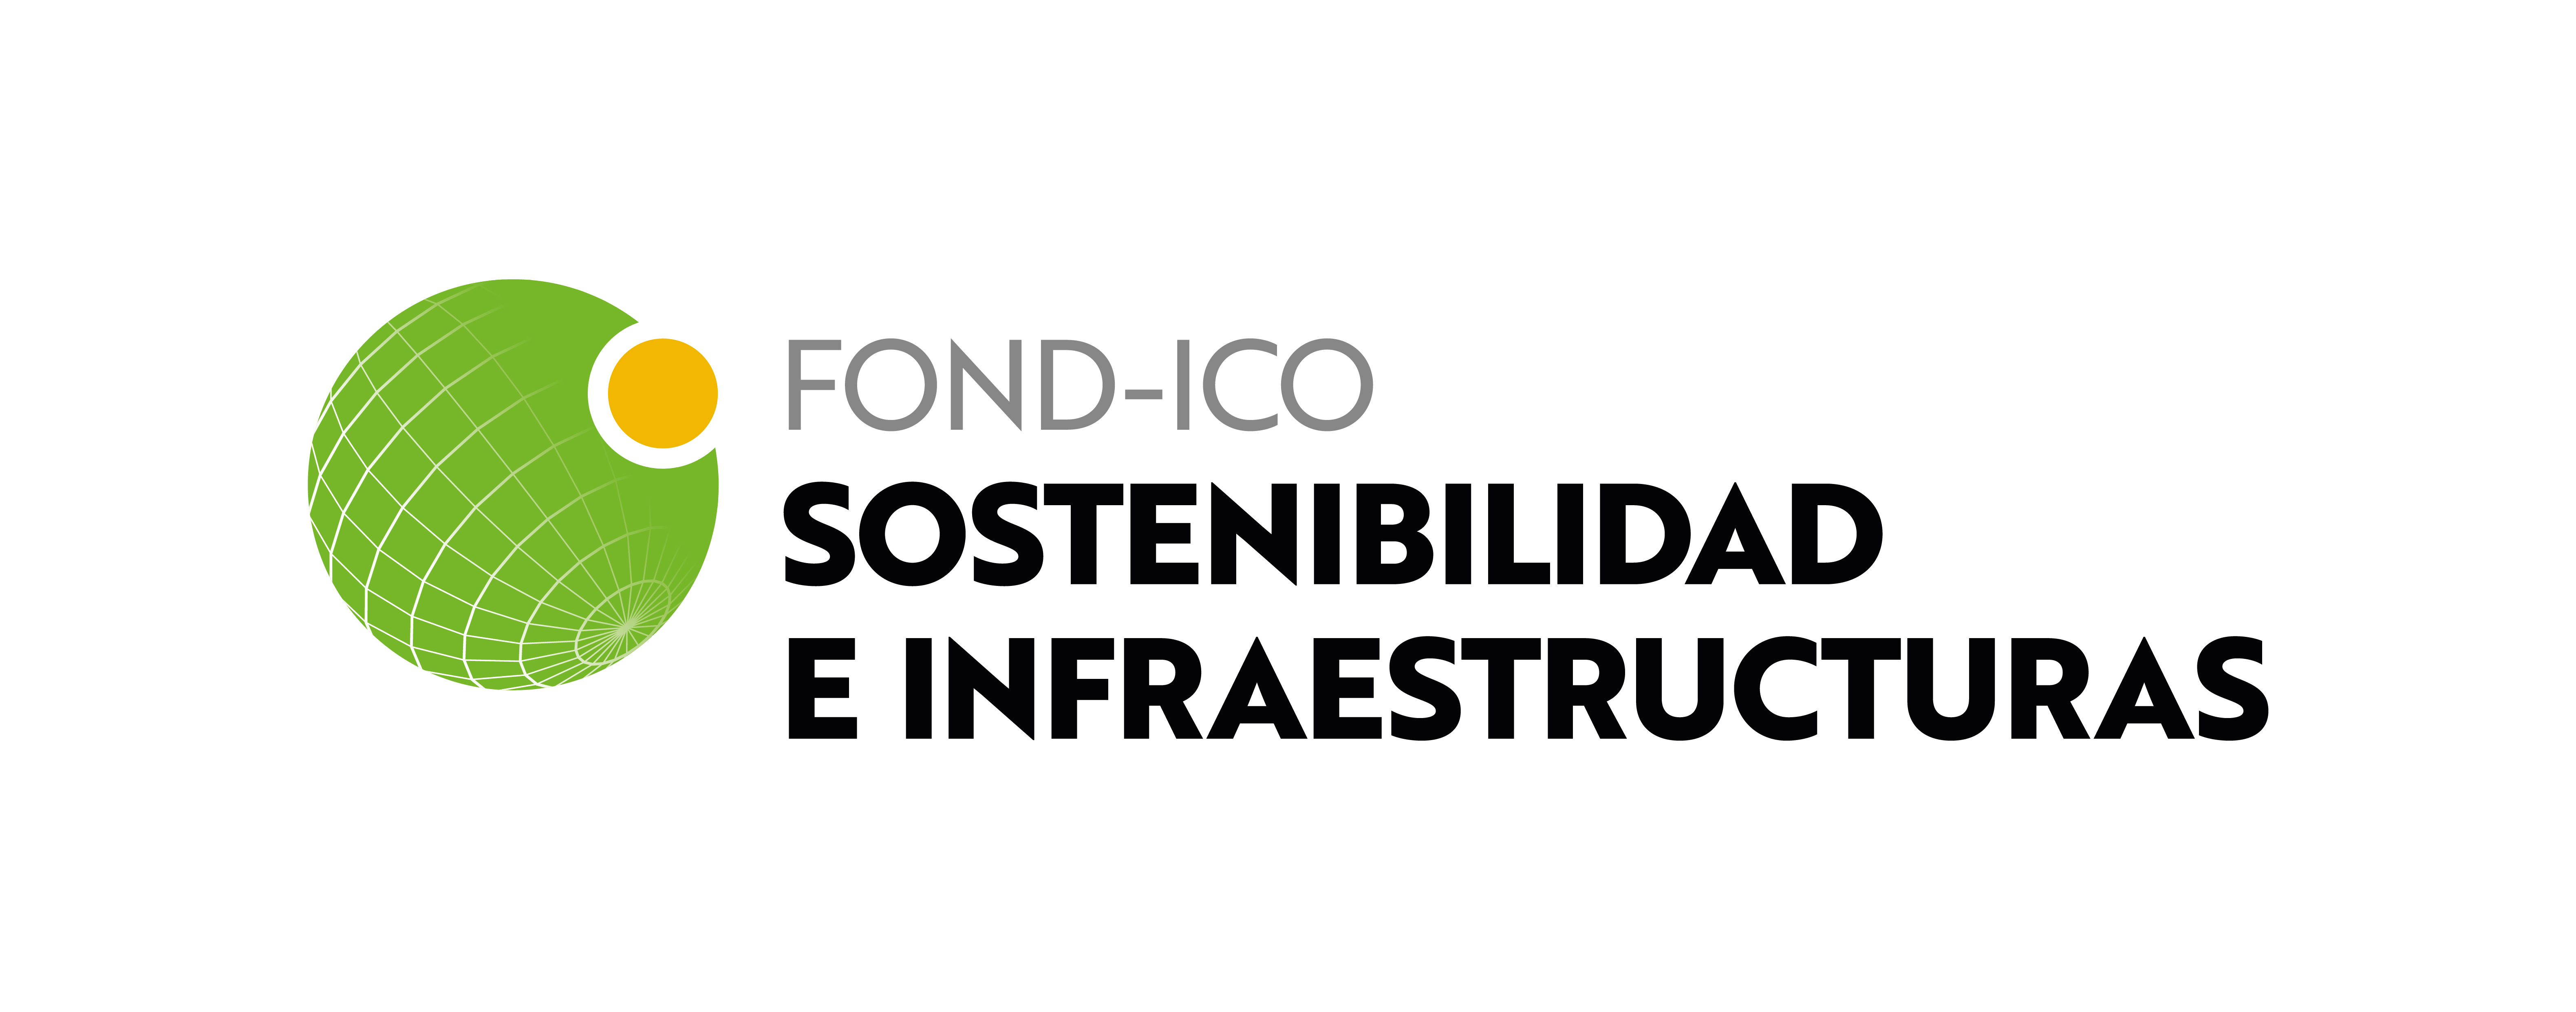 Logo fondo ICO Next Tech EU en ingles